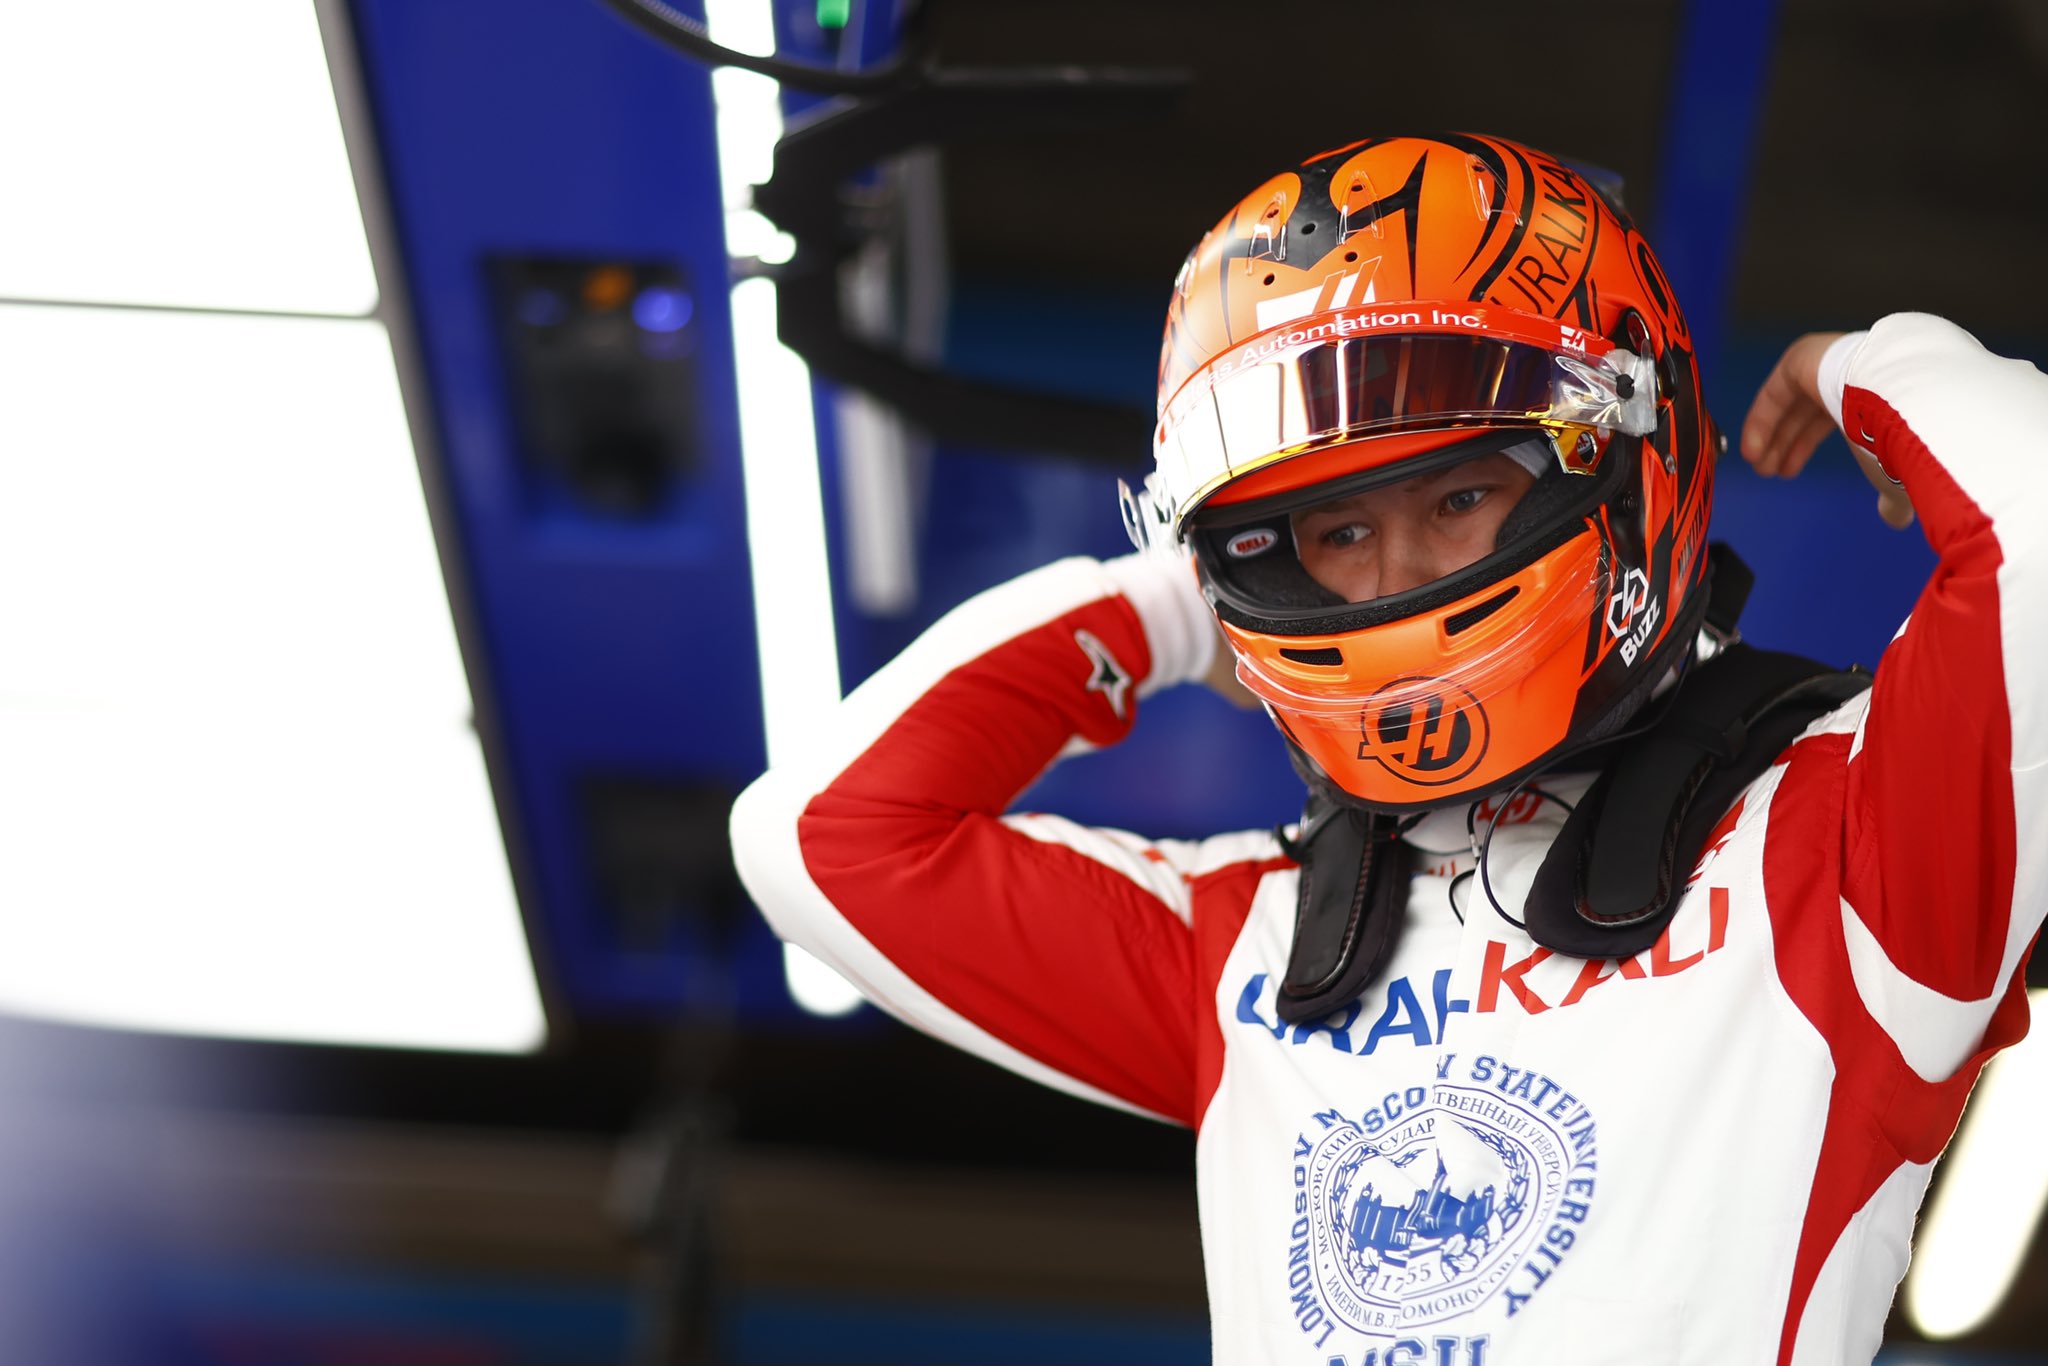 F1 - Officiel : Nikita Mazepin doublement pénalisé au Grand Prix d'Italie